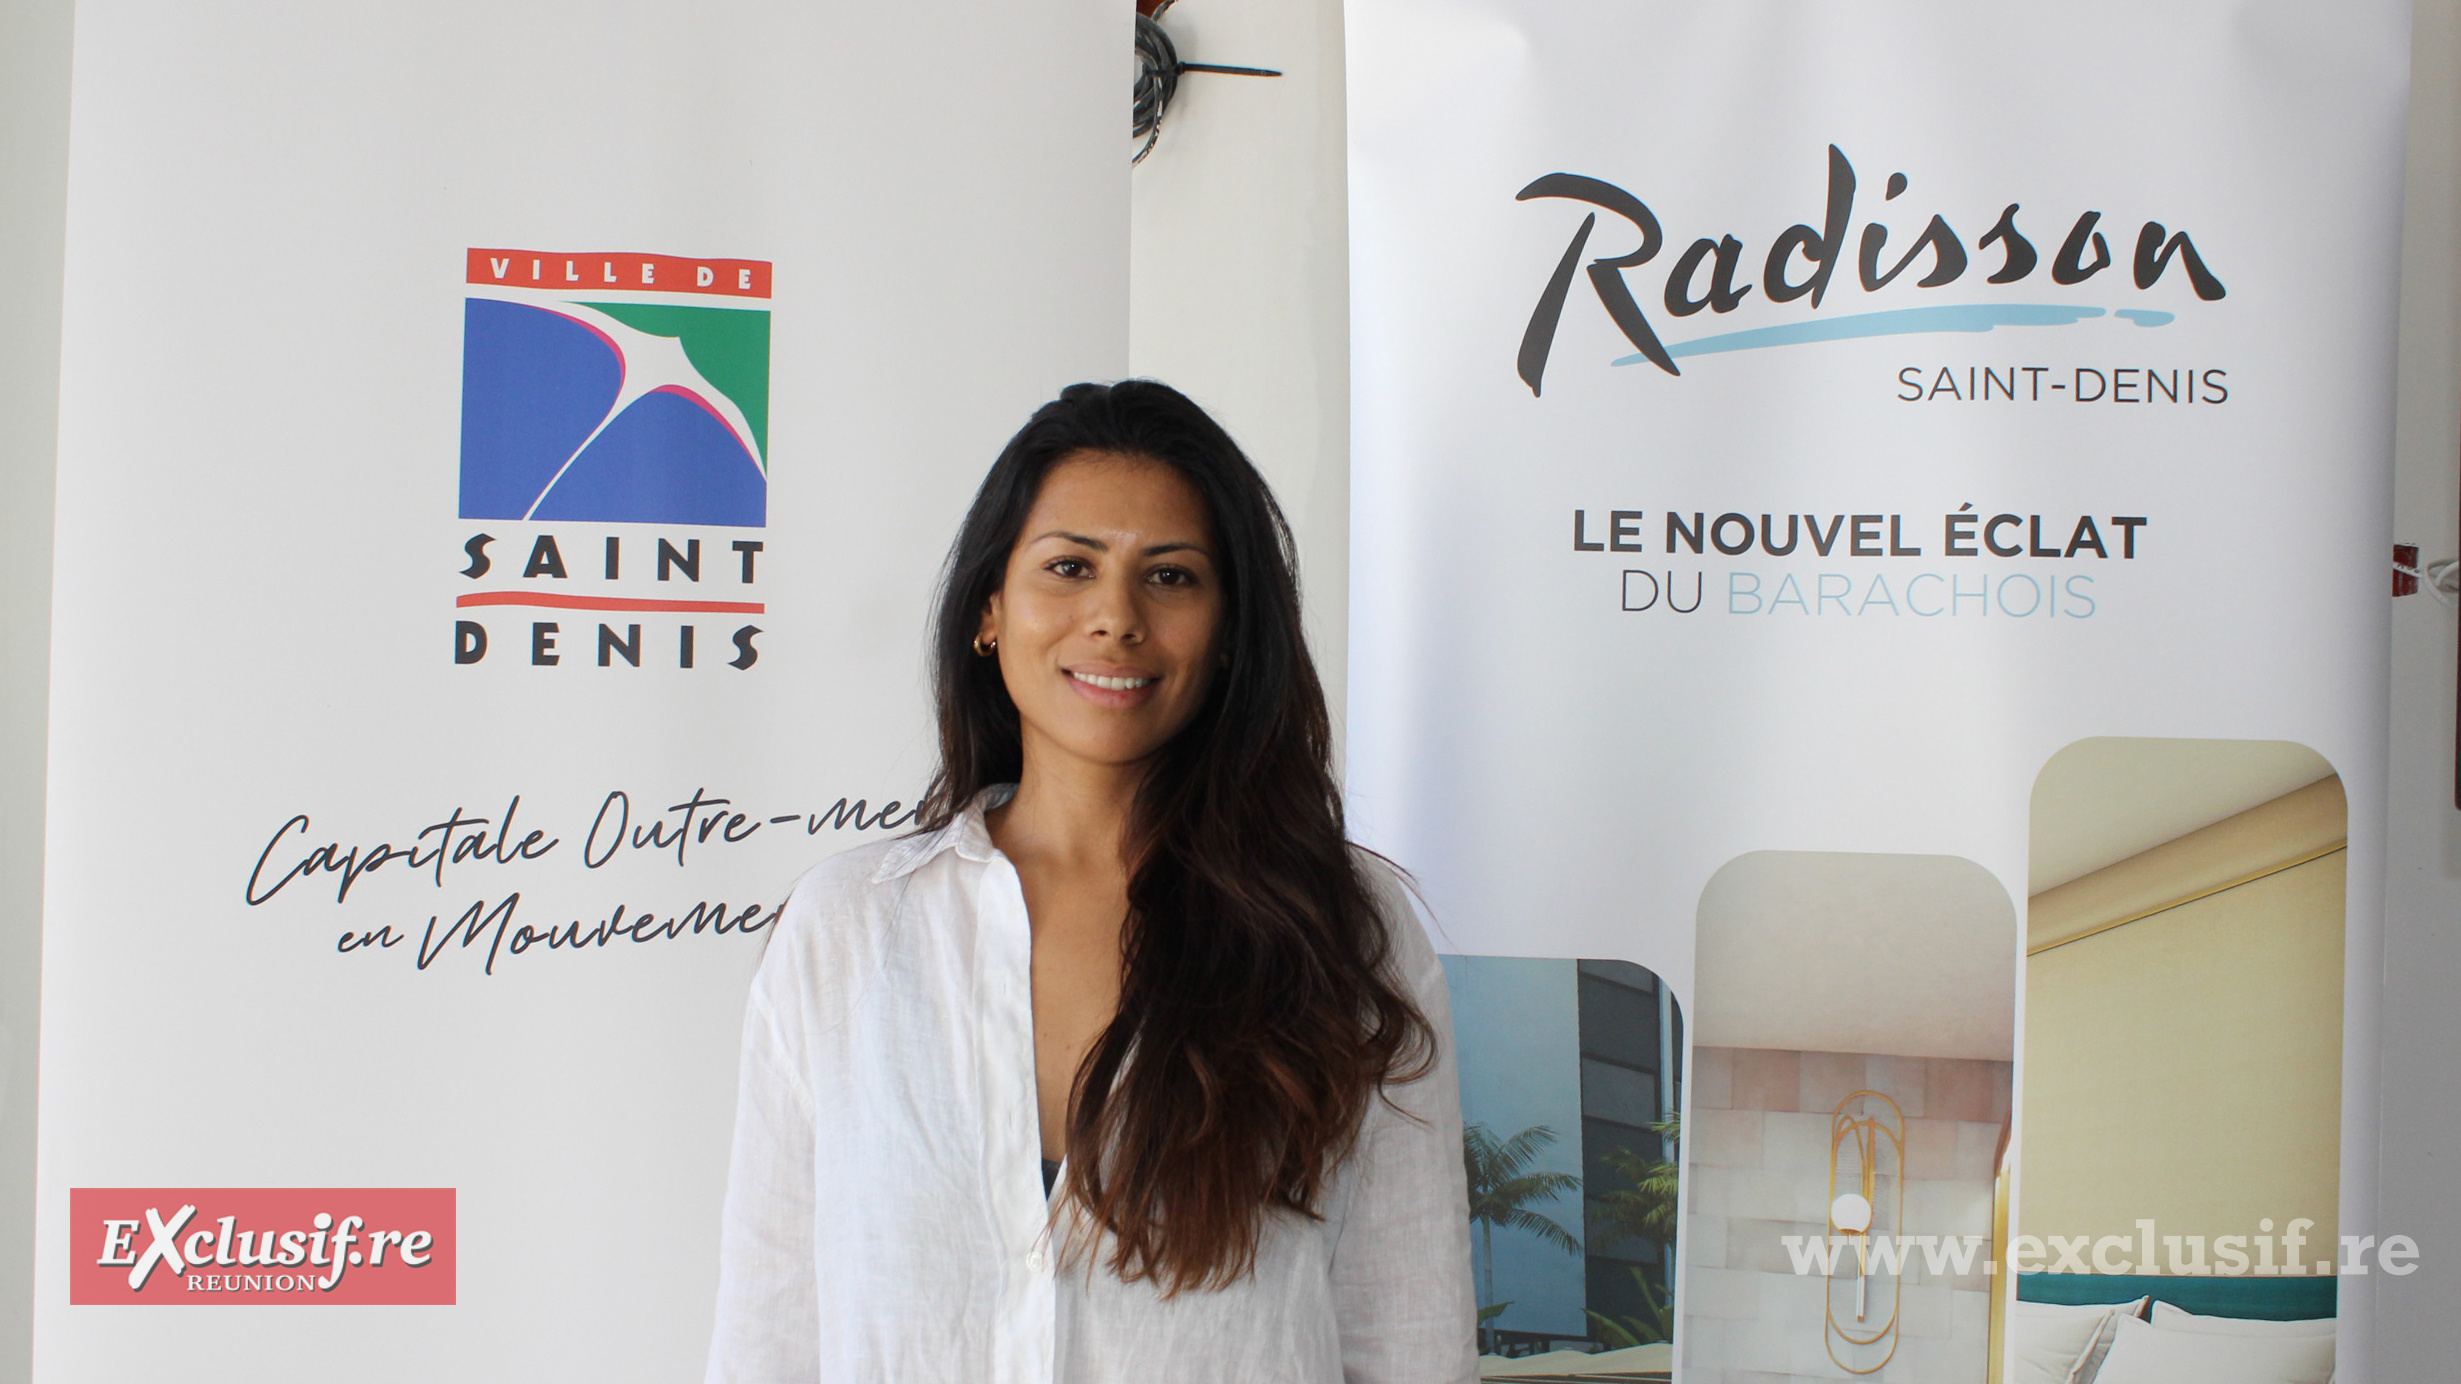 Sarah Soundardjee, du groupe familial Enac, cheffe de projet du Radisson Saint-Denis